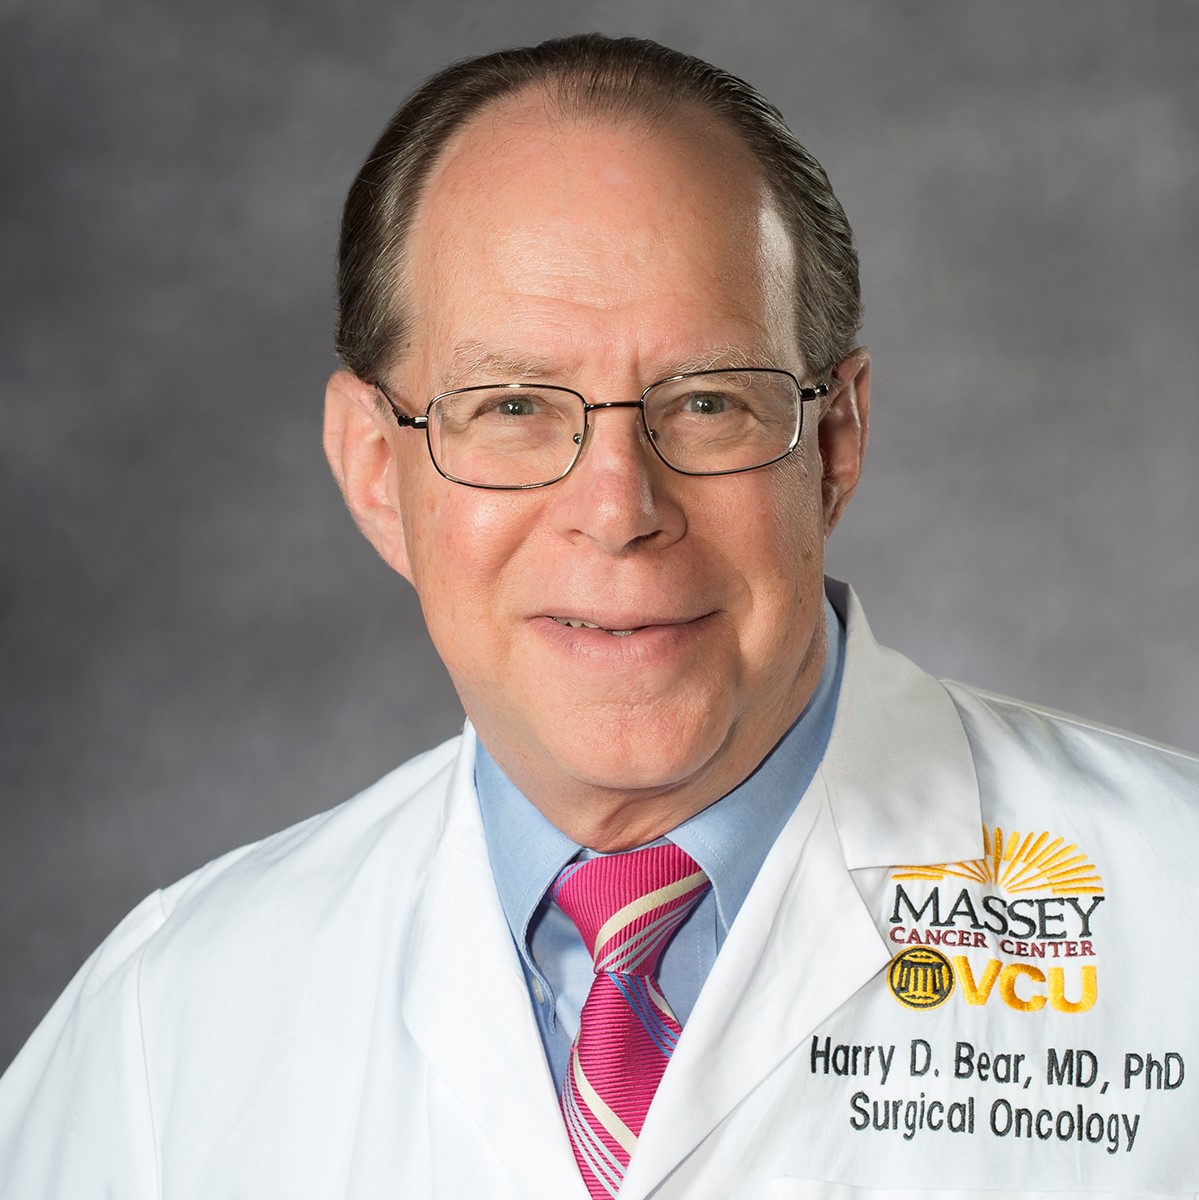 Dr. Harry D. Bear